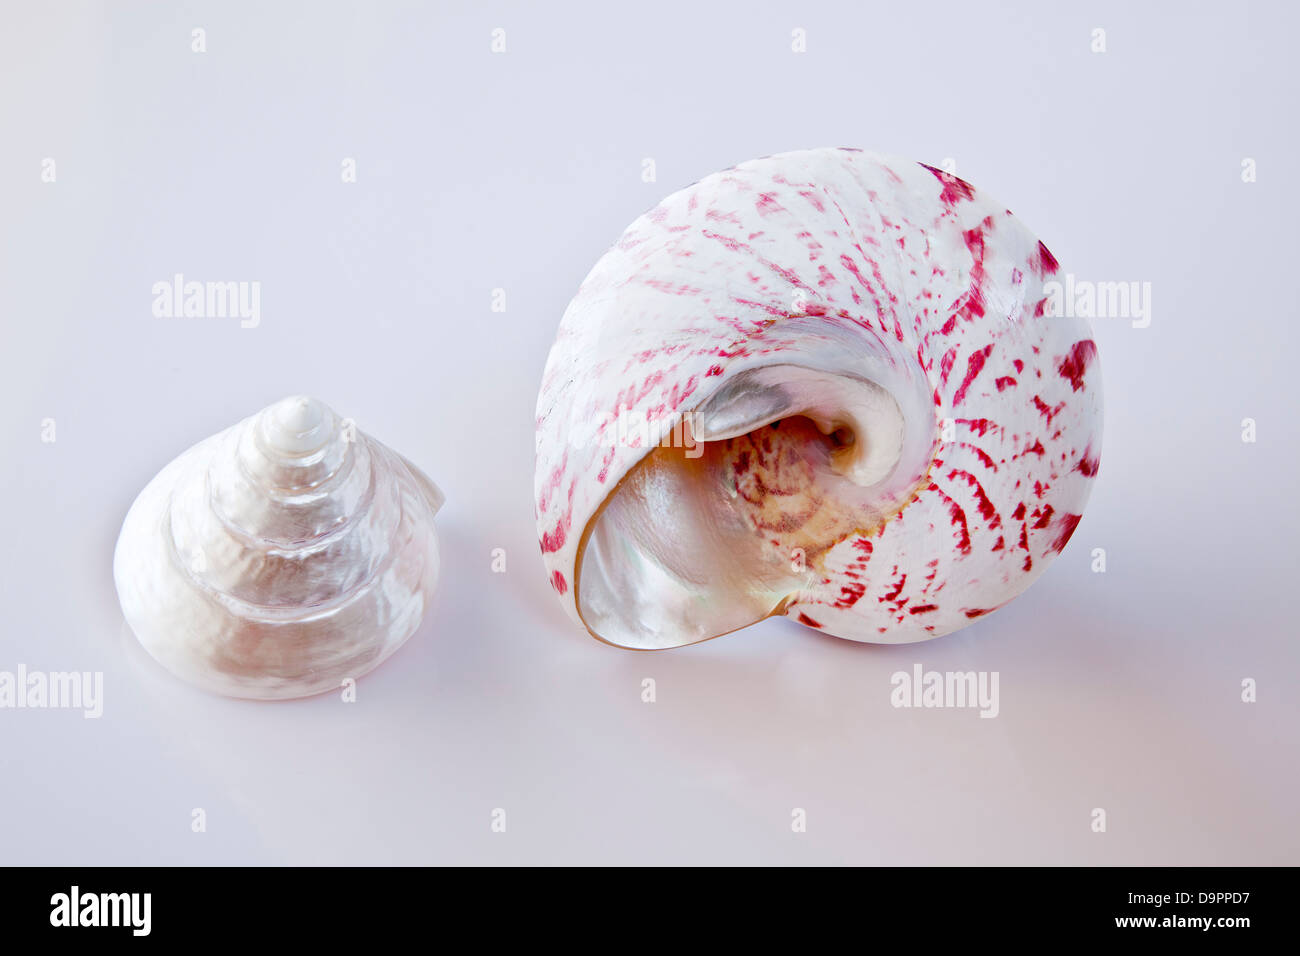 Two seashells. Stock Photo